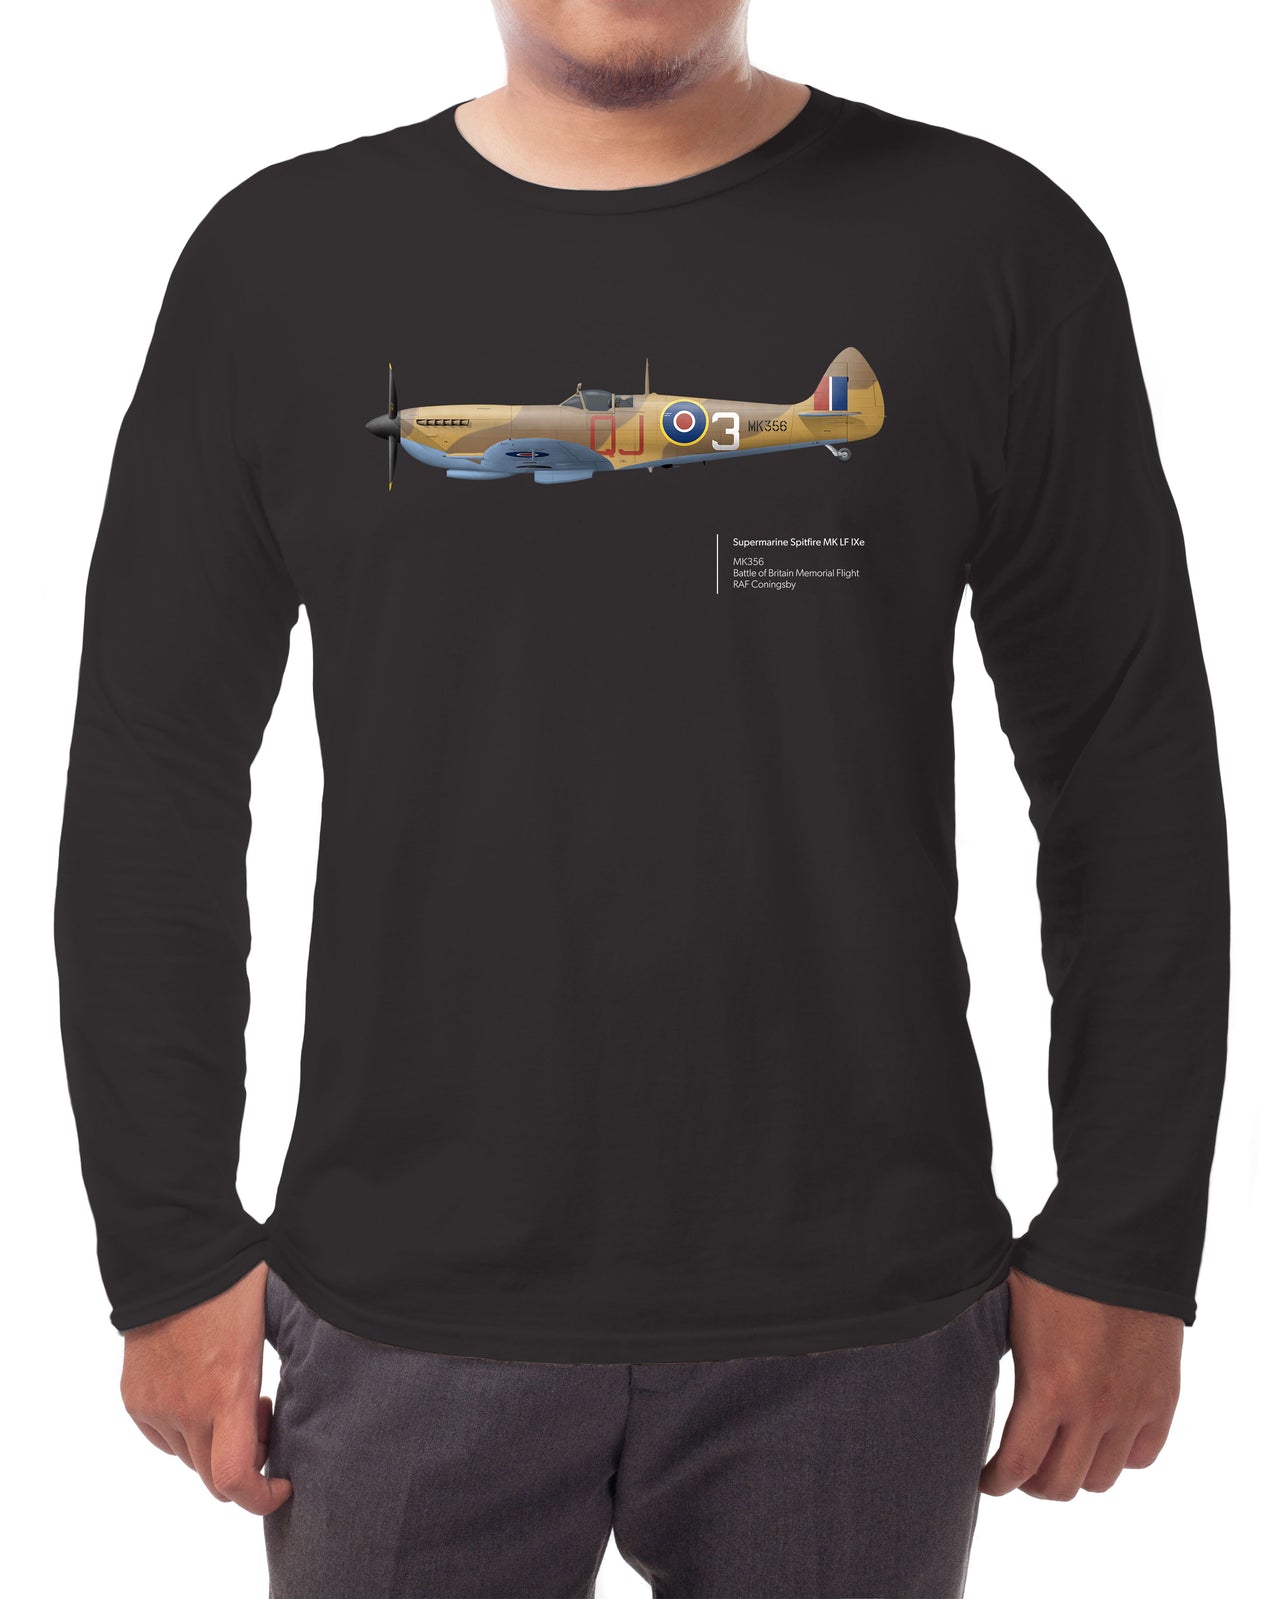 BBMF Spitfire MK LF IXe - Long-sleeve T-shirt